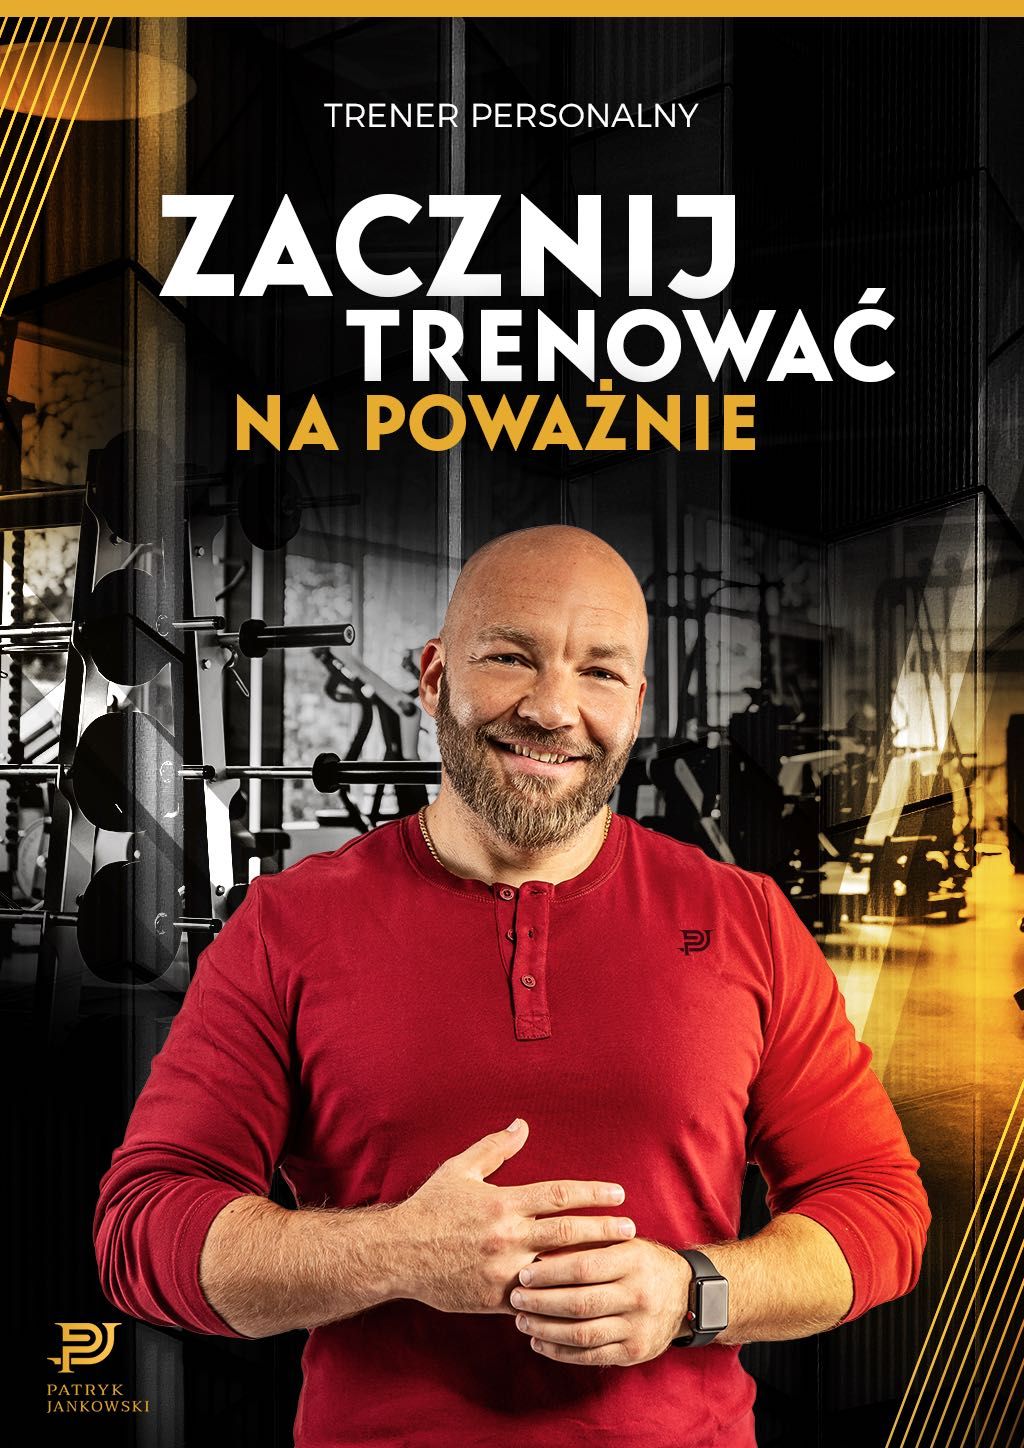 Trener Personalny /Doradca Rozwojowy / Dietetyk Poznań